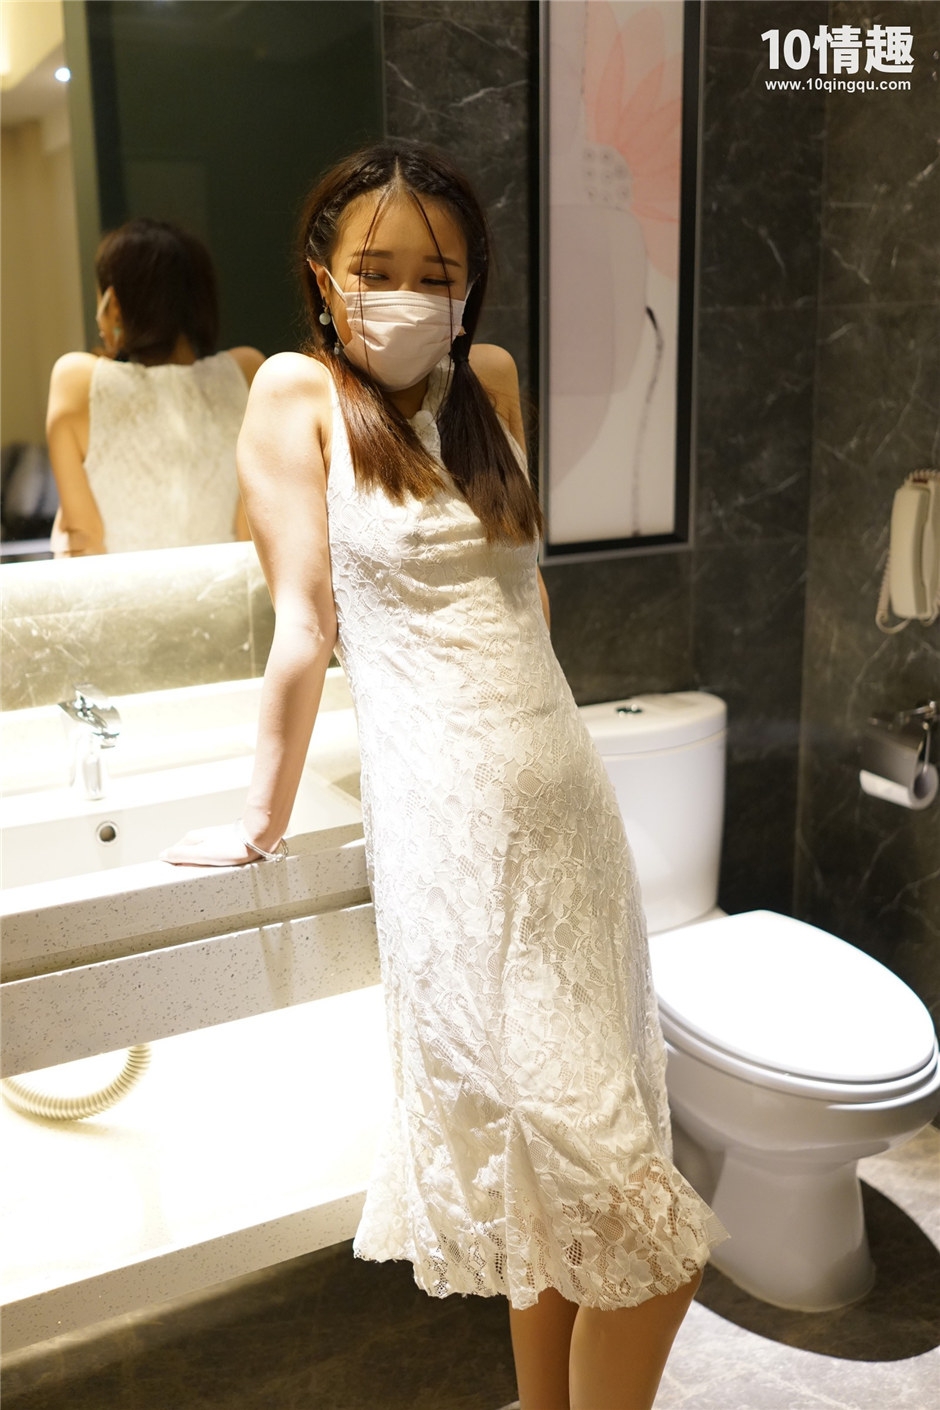 带口罩的连衣裙美女厕所大胆丝袜露点走光写真图片